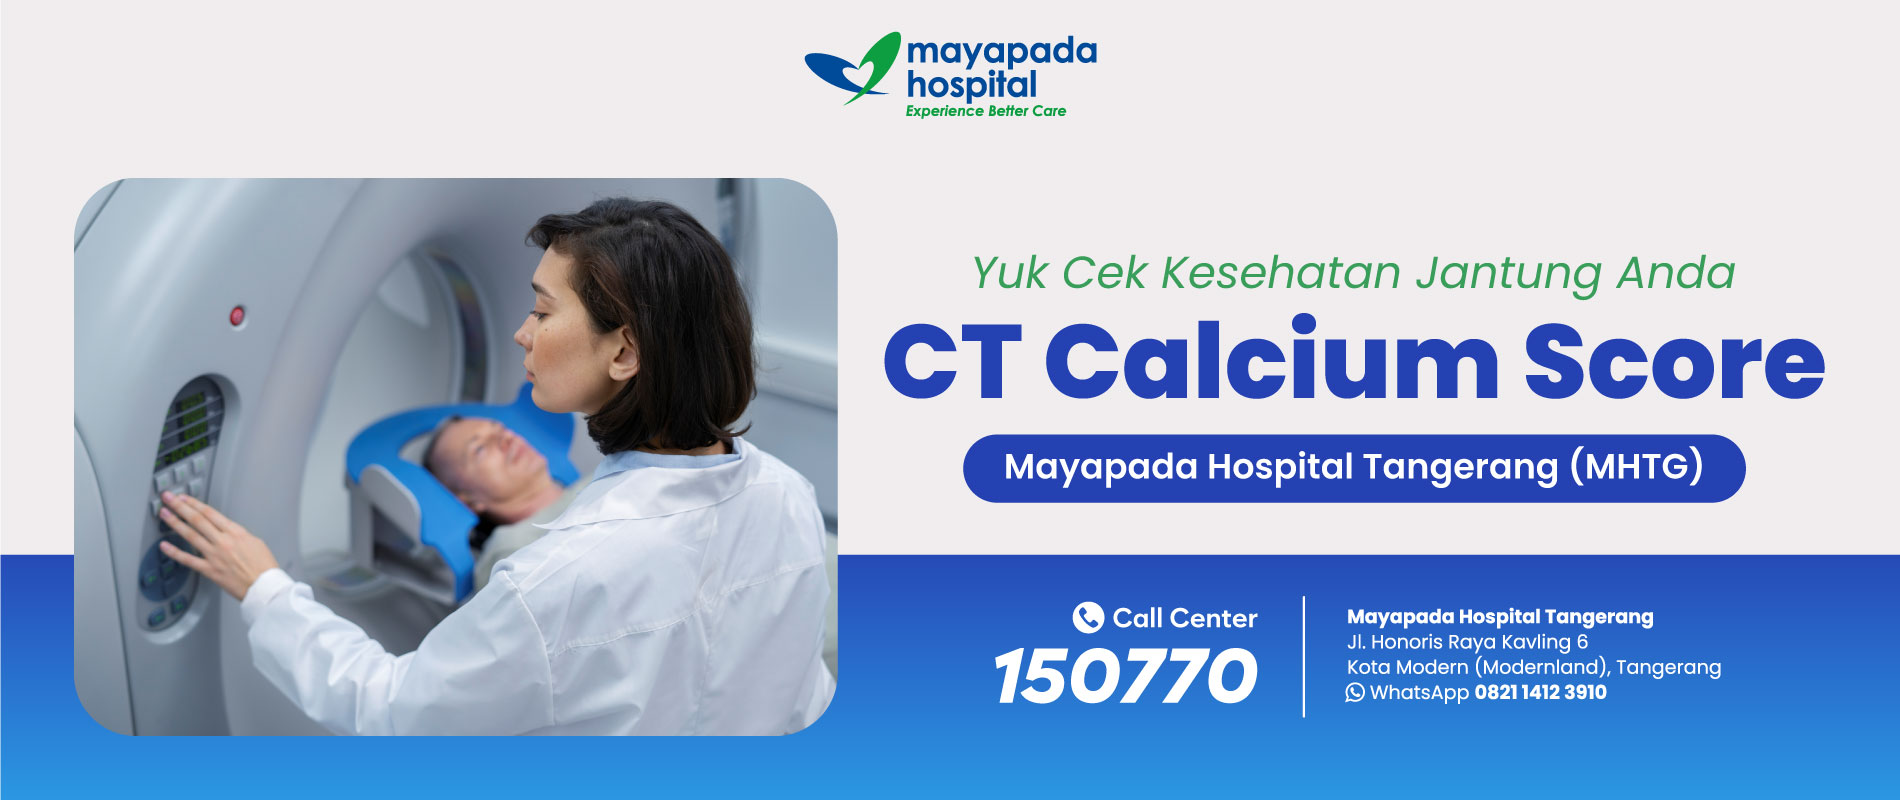 Promo Cek Kesehatan Jantung dengan CT Calcium Score IMG